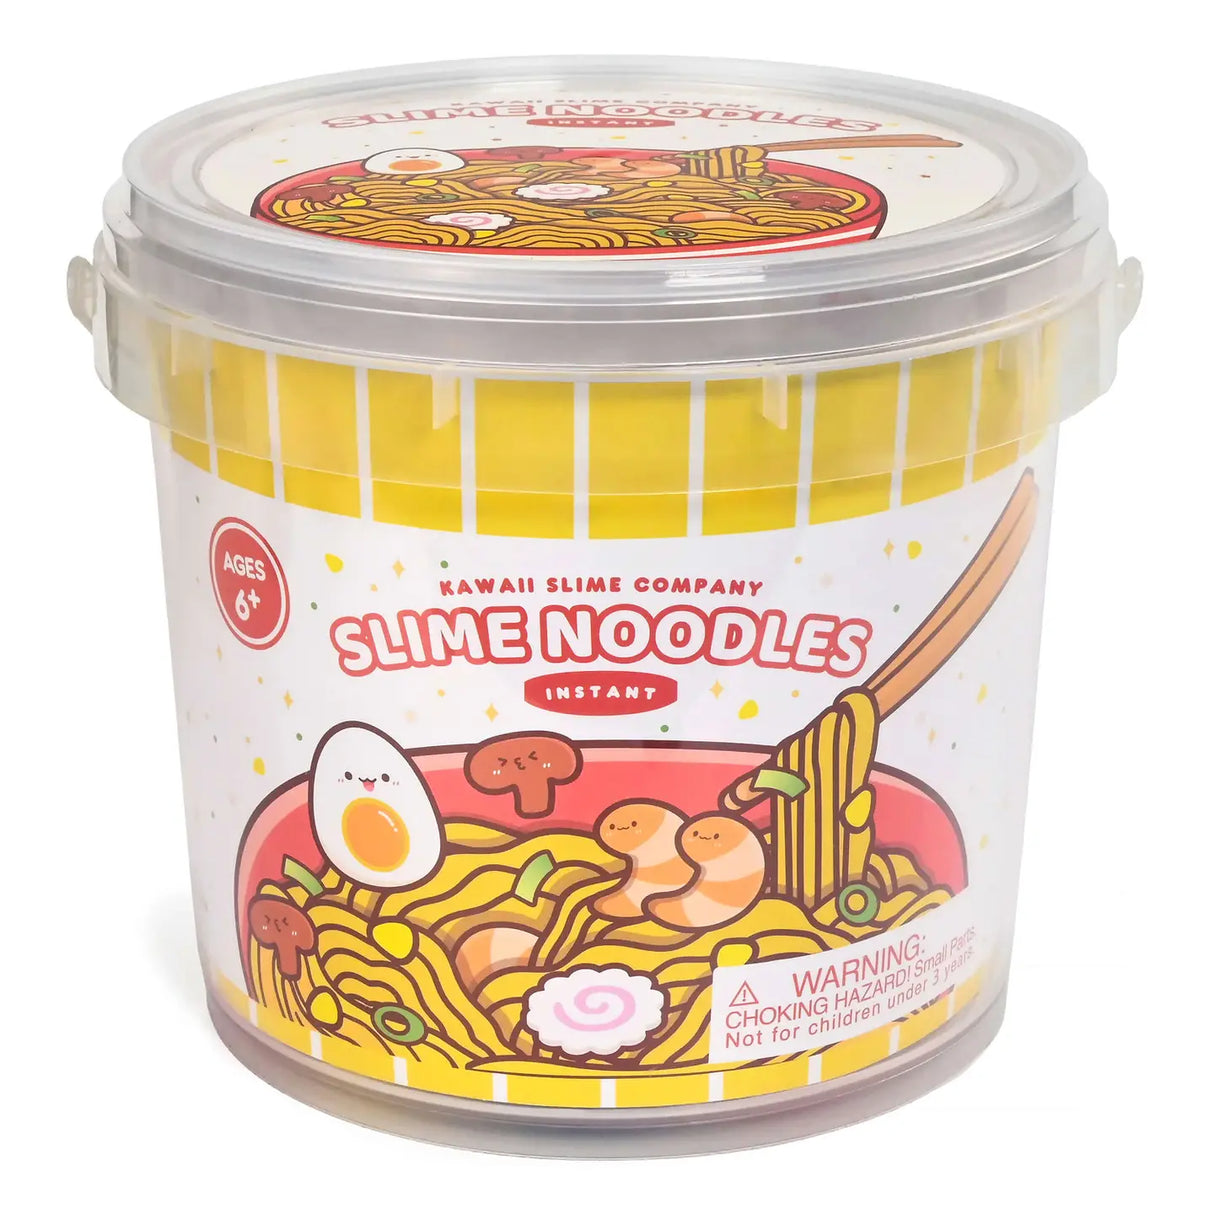 Instant Ramen Noodles Slime Kit